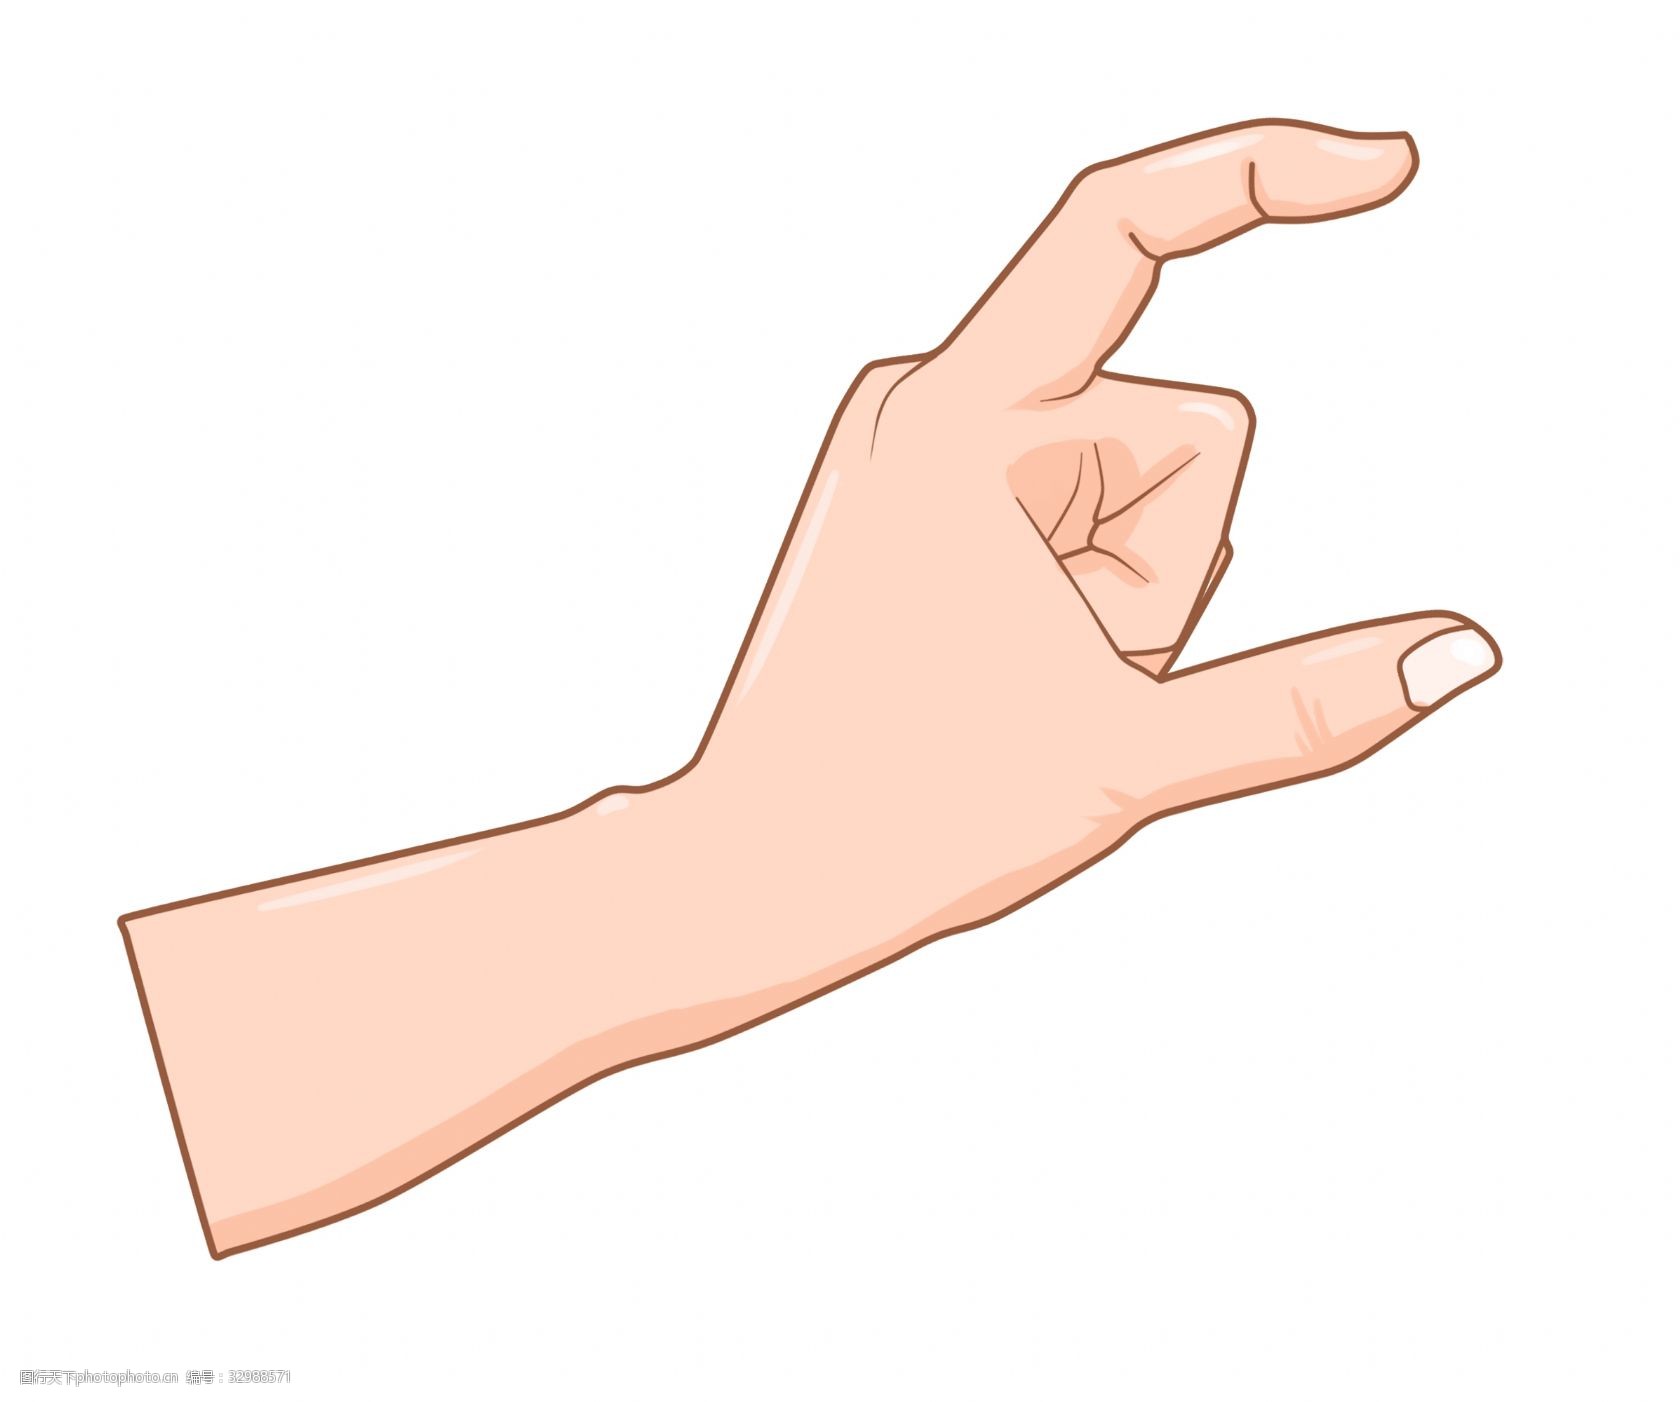 五根手指 创意手势插画 大拇指食指手势 立体半圆手势 一只手插画